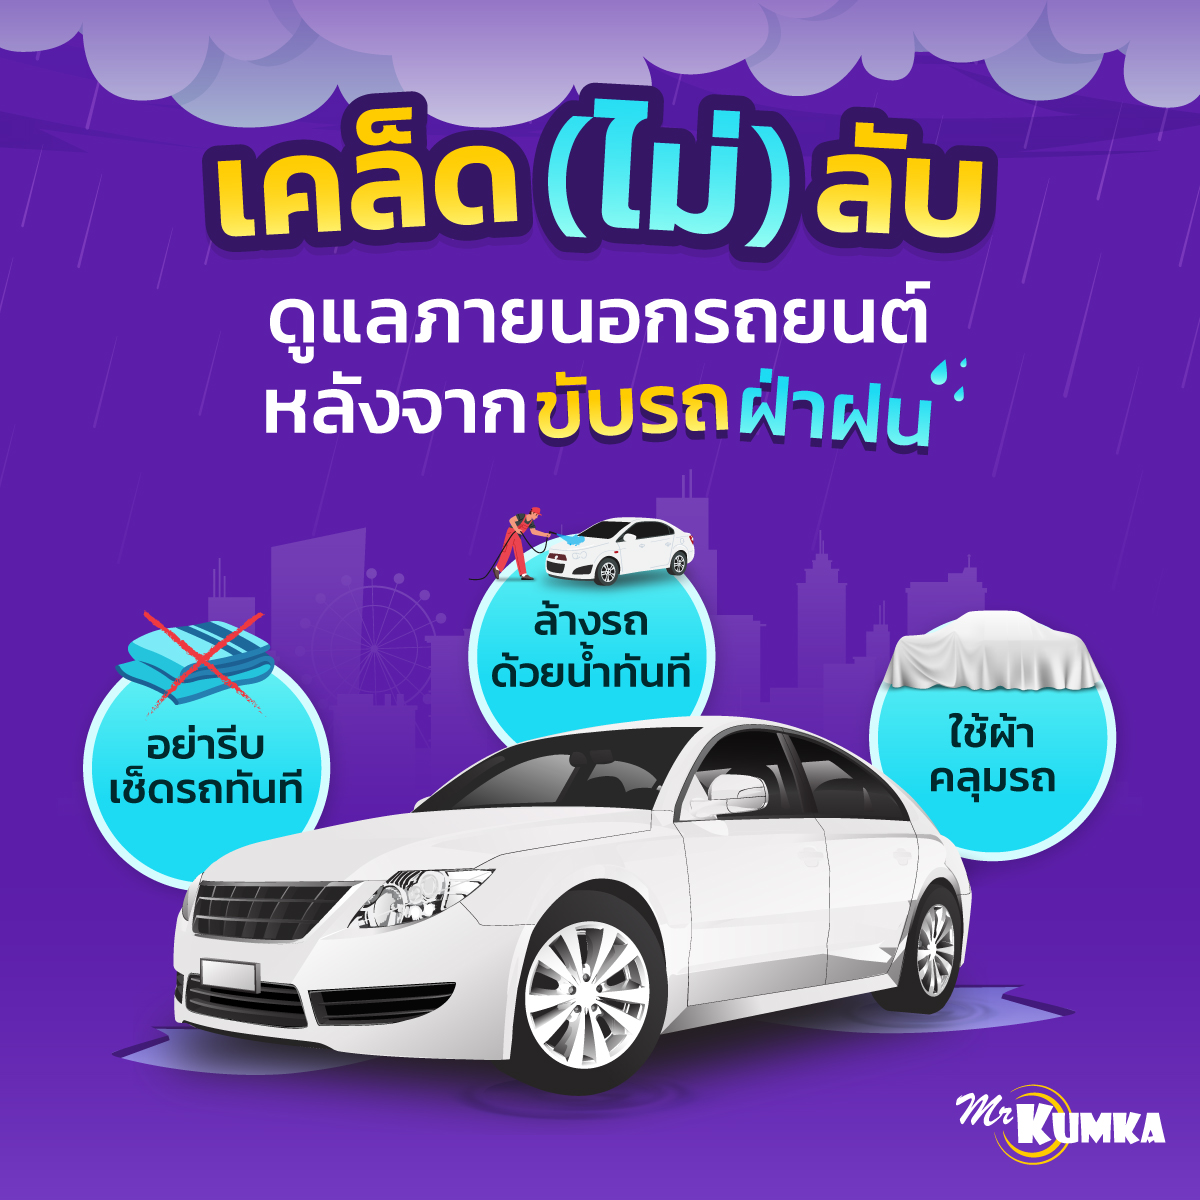 วิธีดูแลภายนอกรถยนต์หลังจากขับรถฝ่าฝน | MrKumka.com
